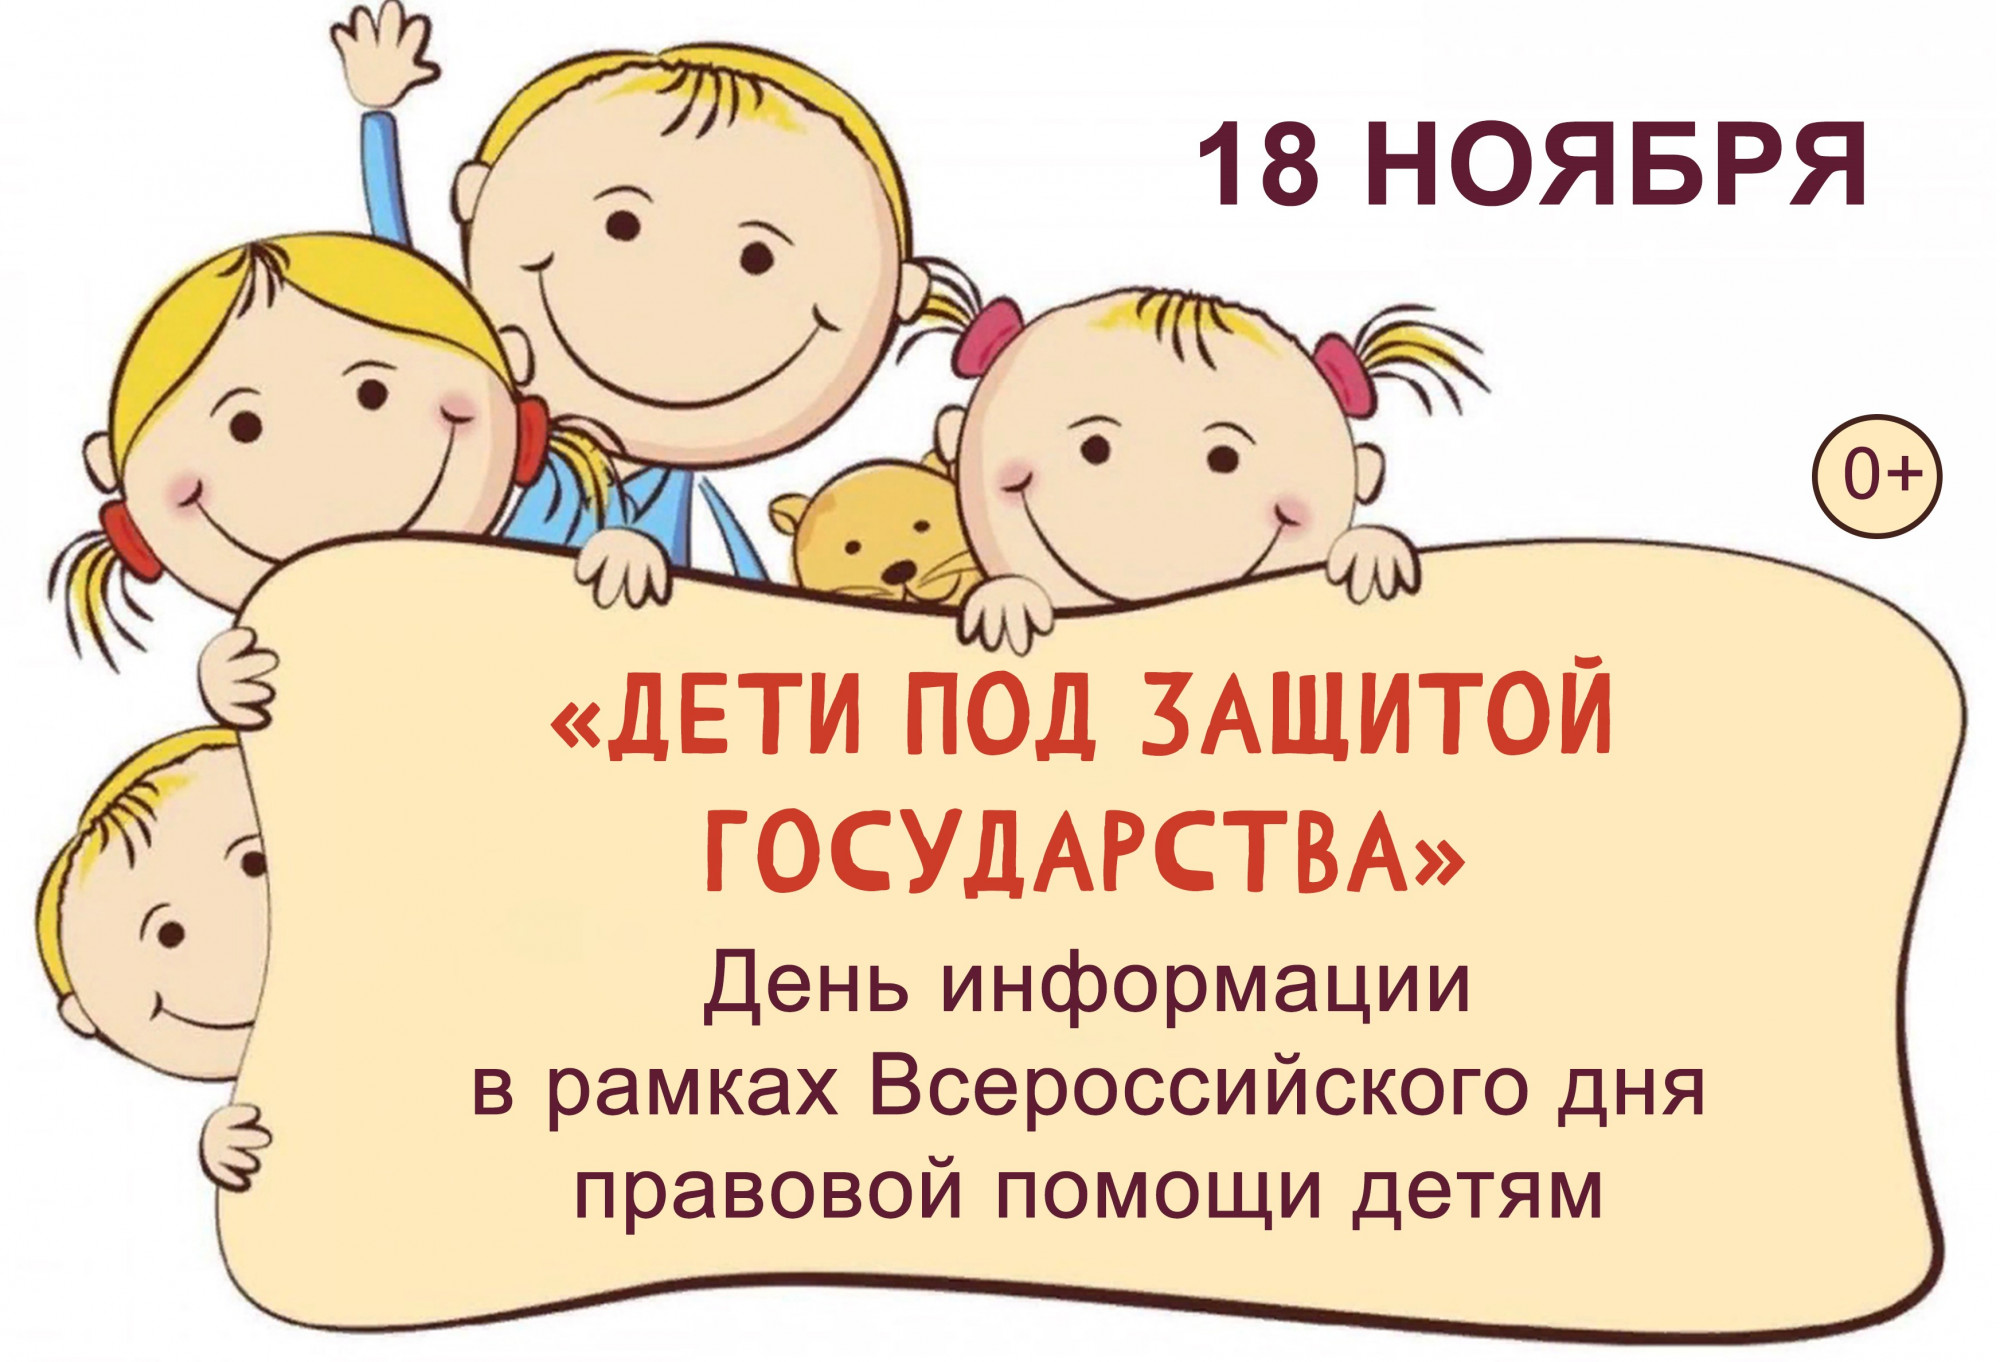 Всероссийский день правовой помощи детям рисунки